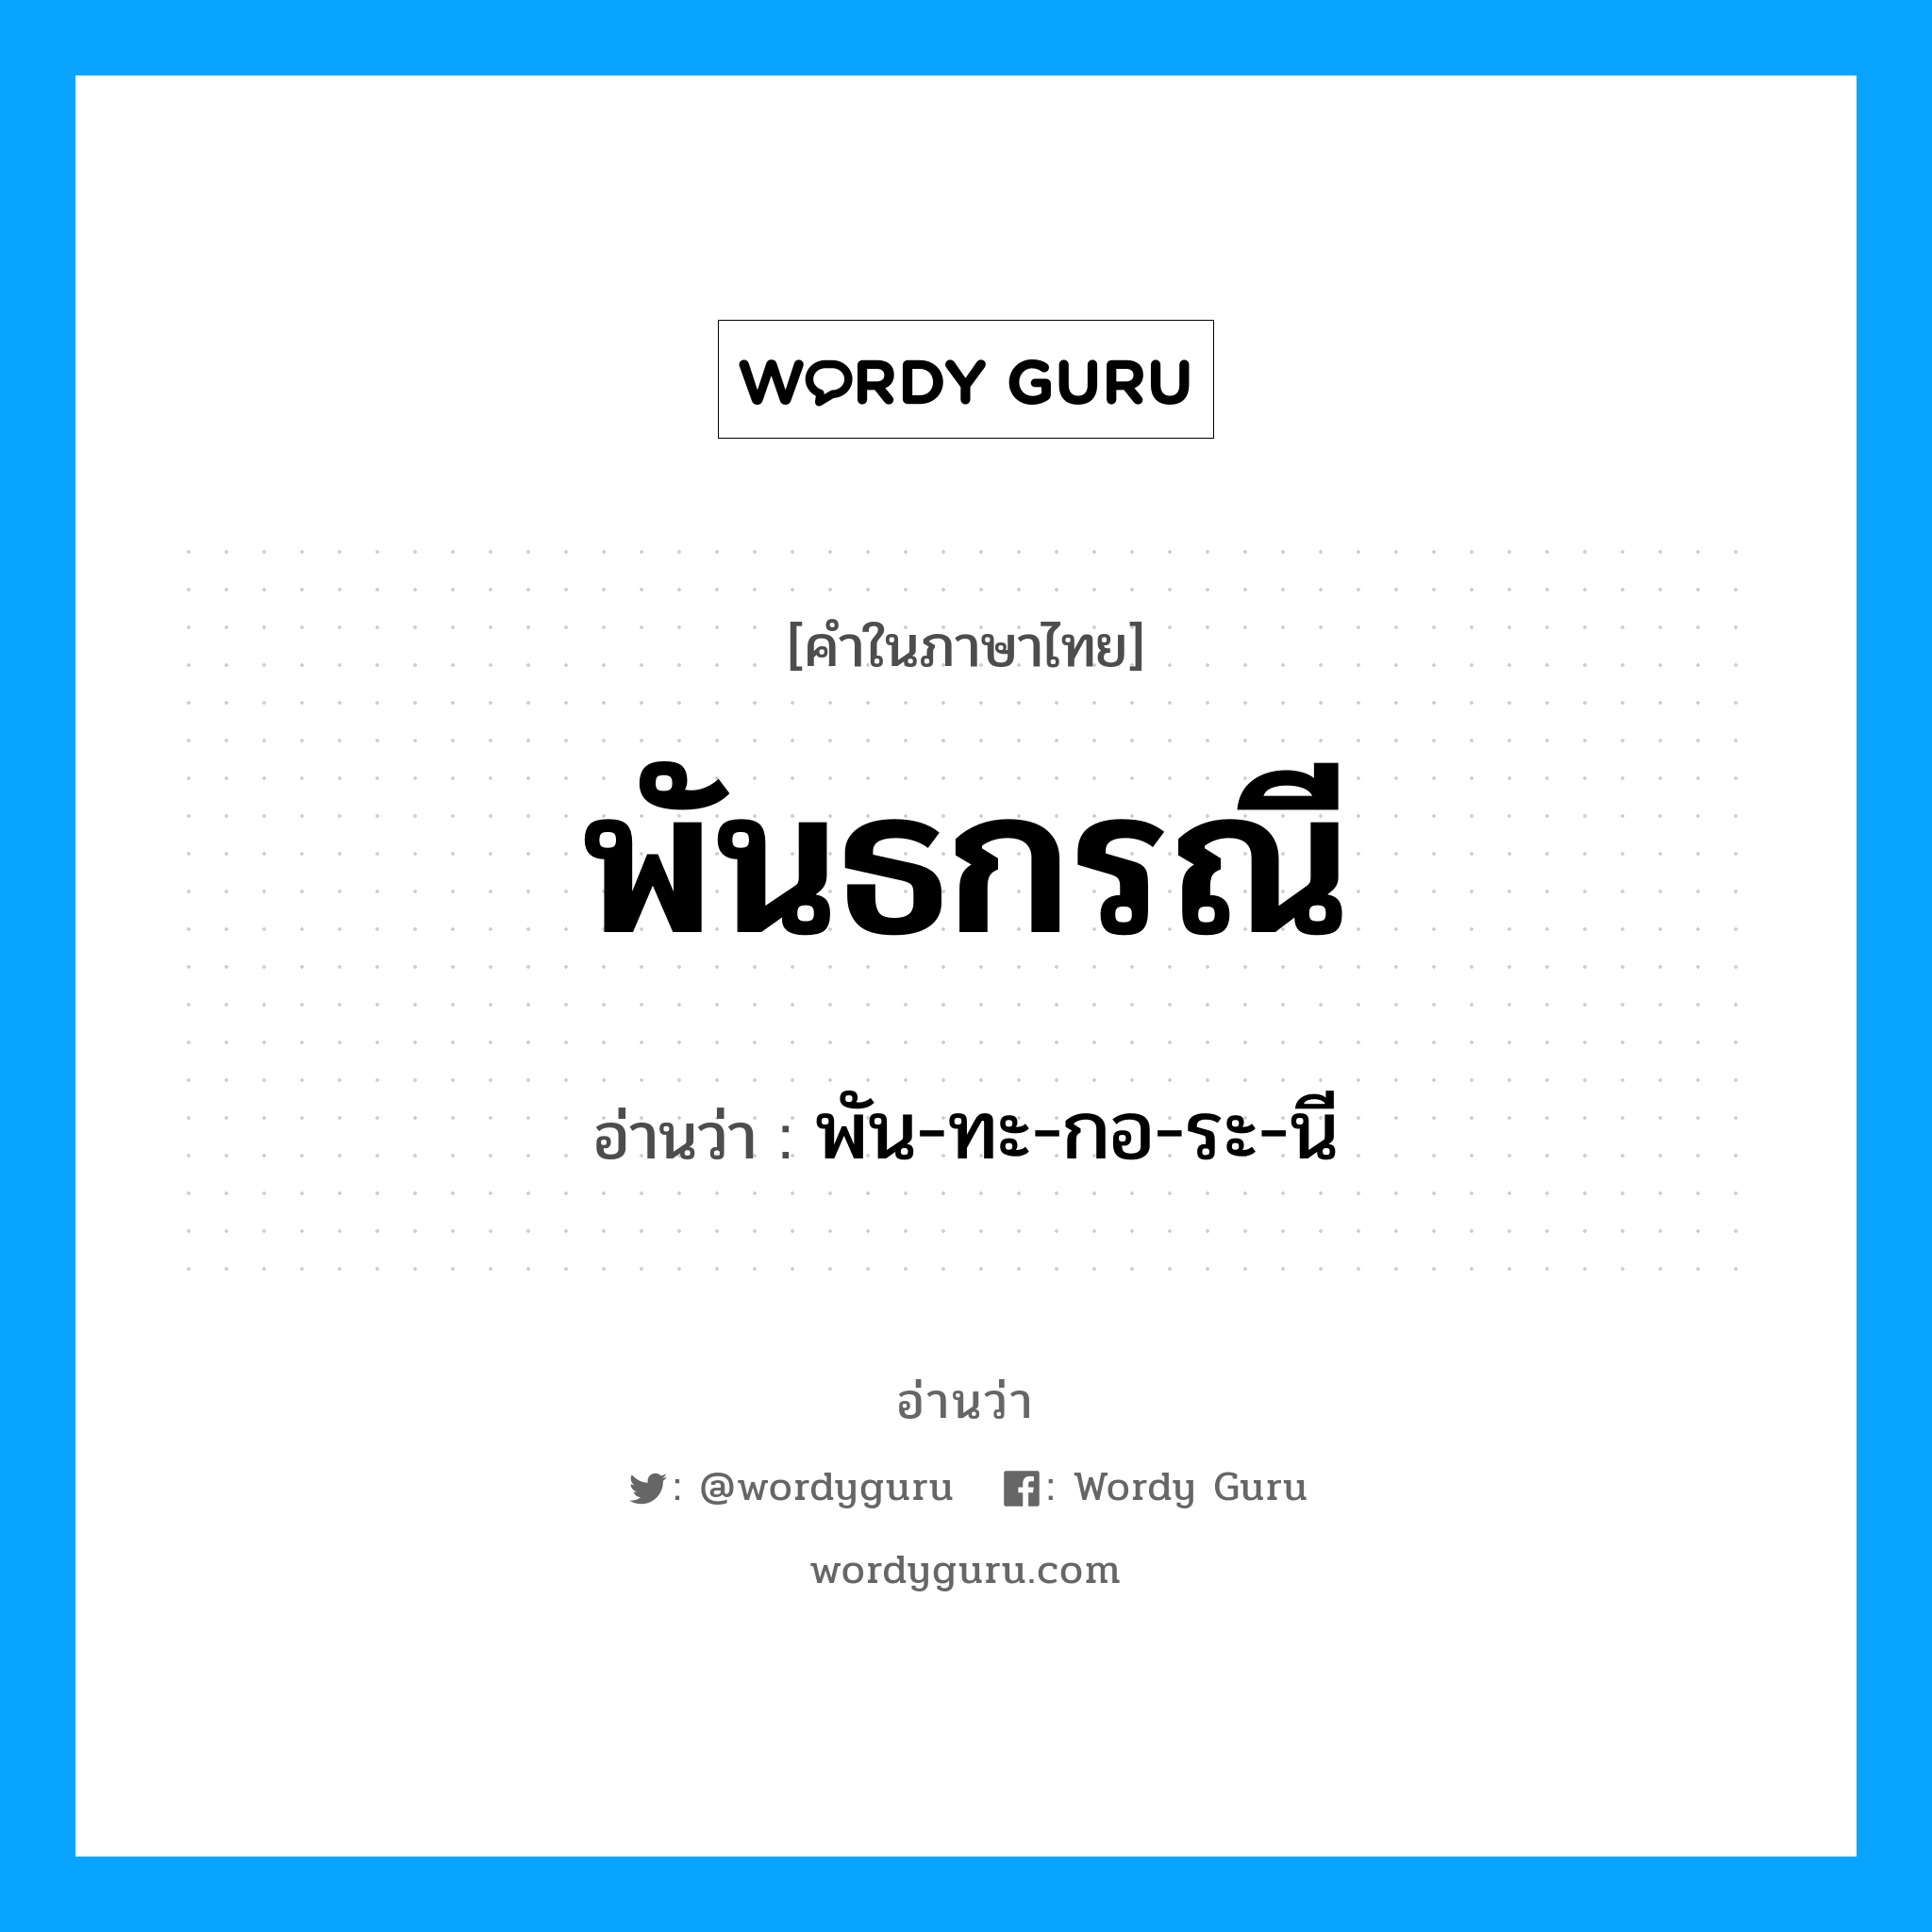 พัน-ทะ-กอ-ระ-นี เป็นคำอ่านของคำไหน?, คำในภาษาไทย พัน-ทะ-กอ-ระ-นี อ่านว่า พันธกรณี